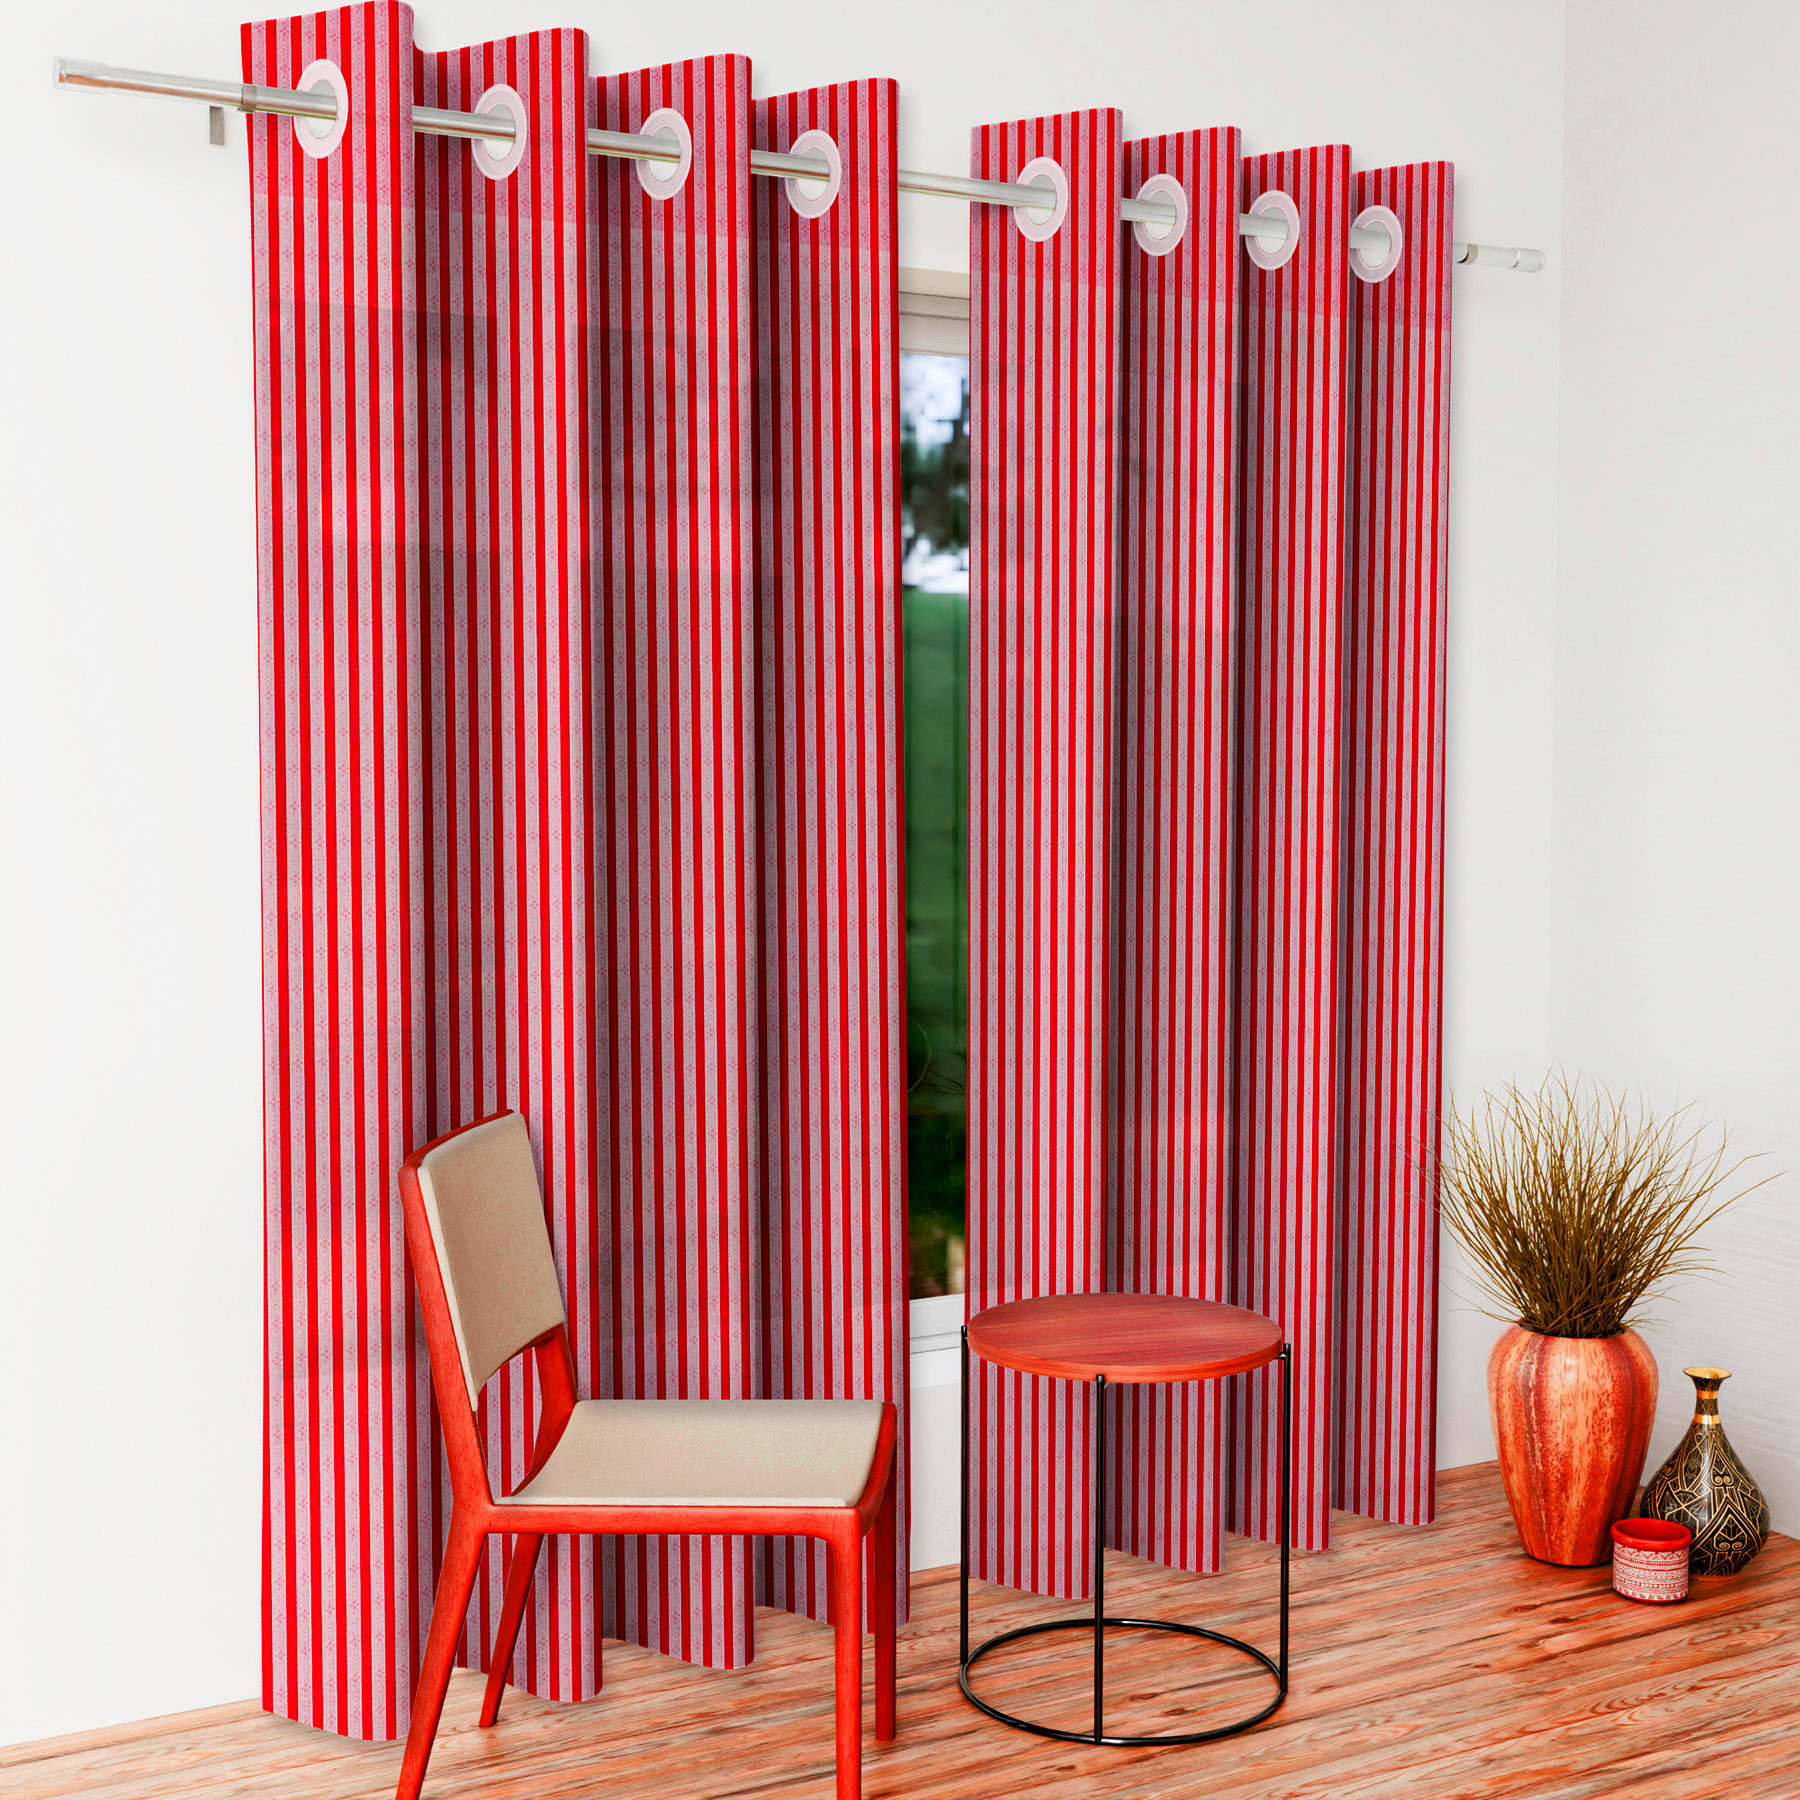 Kuber Industries Door Curtain | Sheer Door Curtains | Parda for Living Room | Bedroom Balcony Parda | Door Curtain Parda for Home Décor | Lining Net | 7 Feet | Maroon